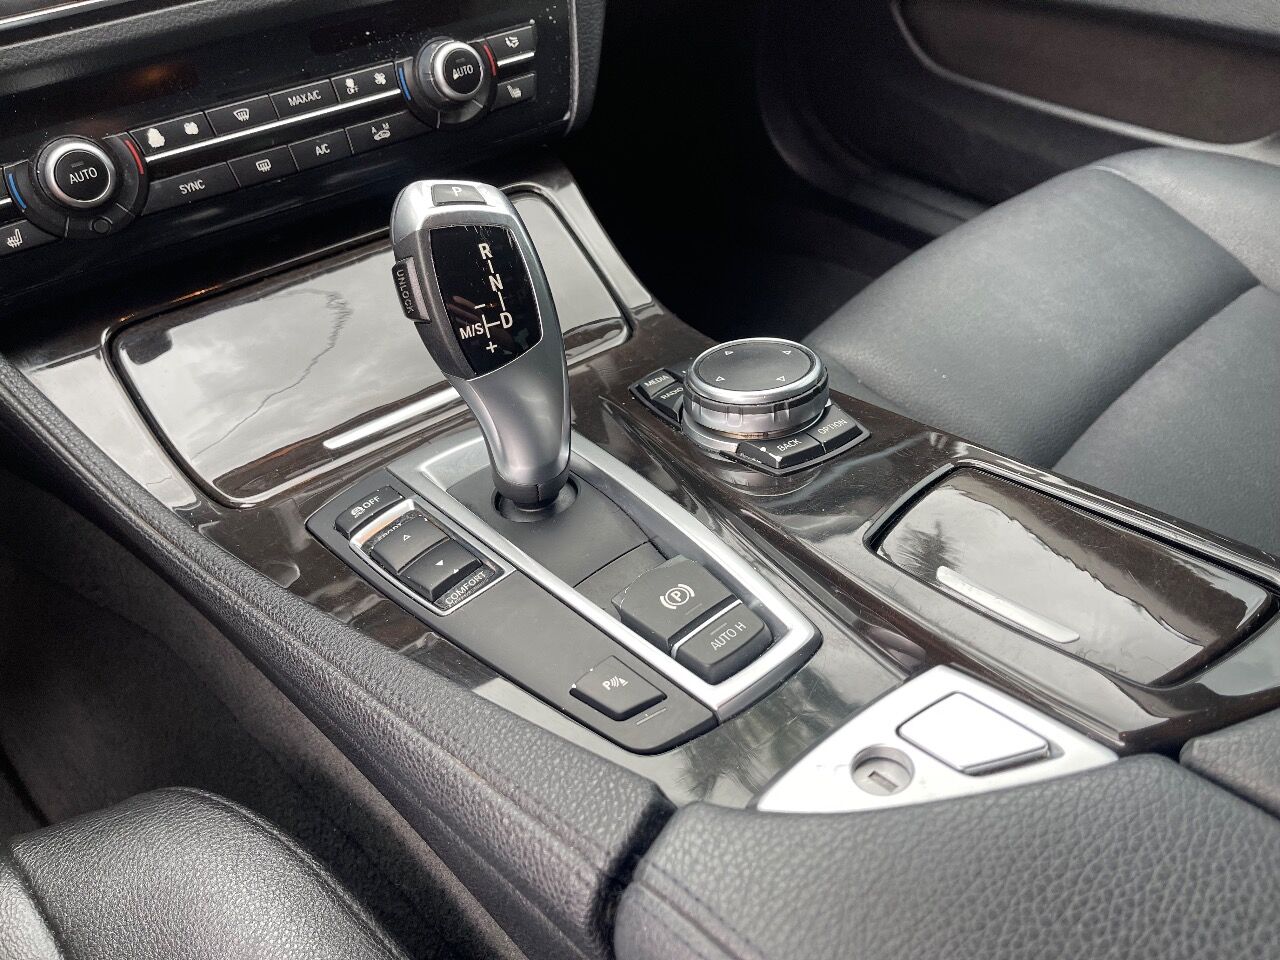 2015 BMW 528i Sedan - $10,900